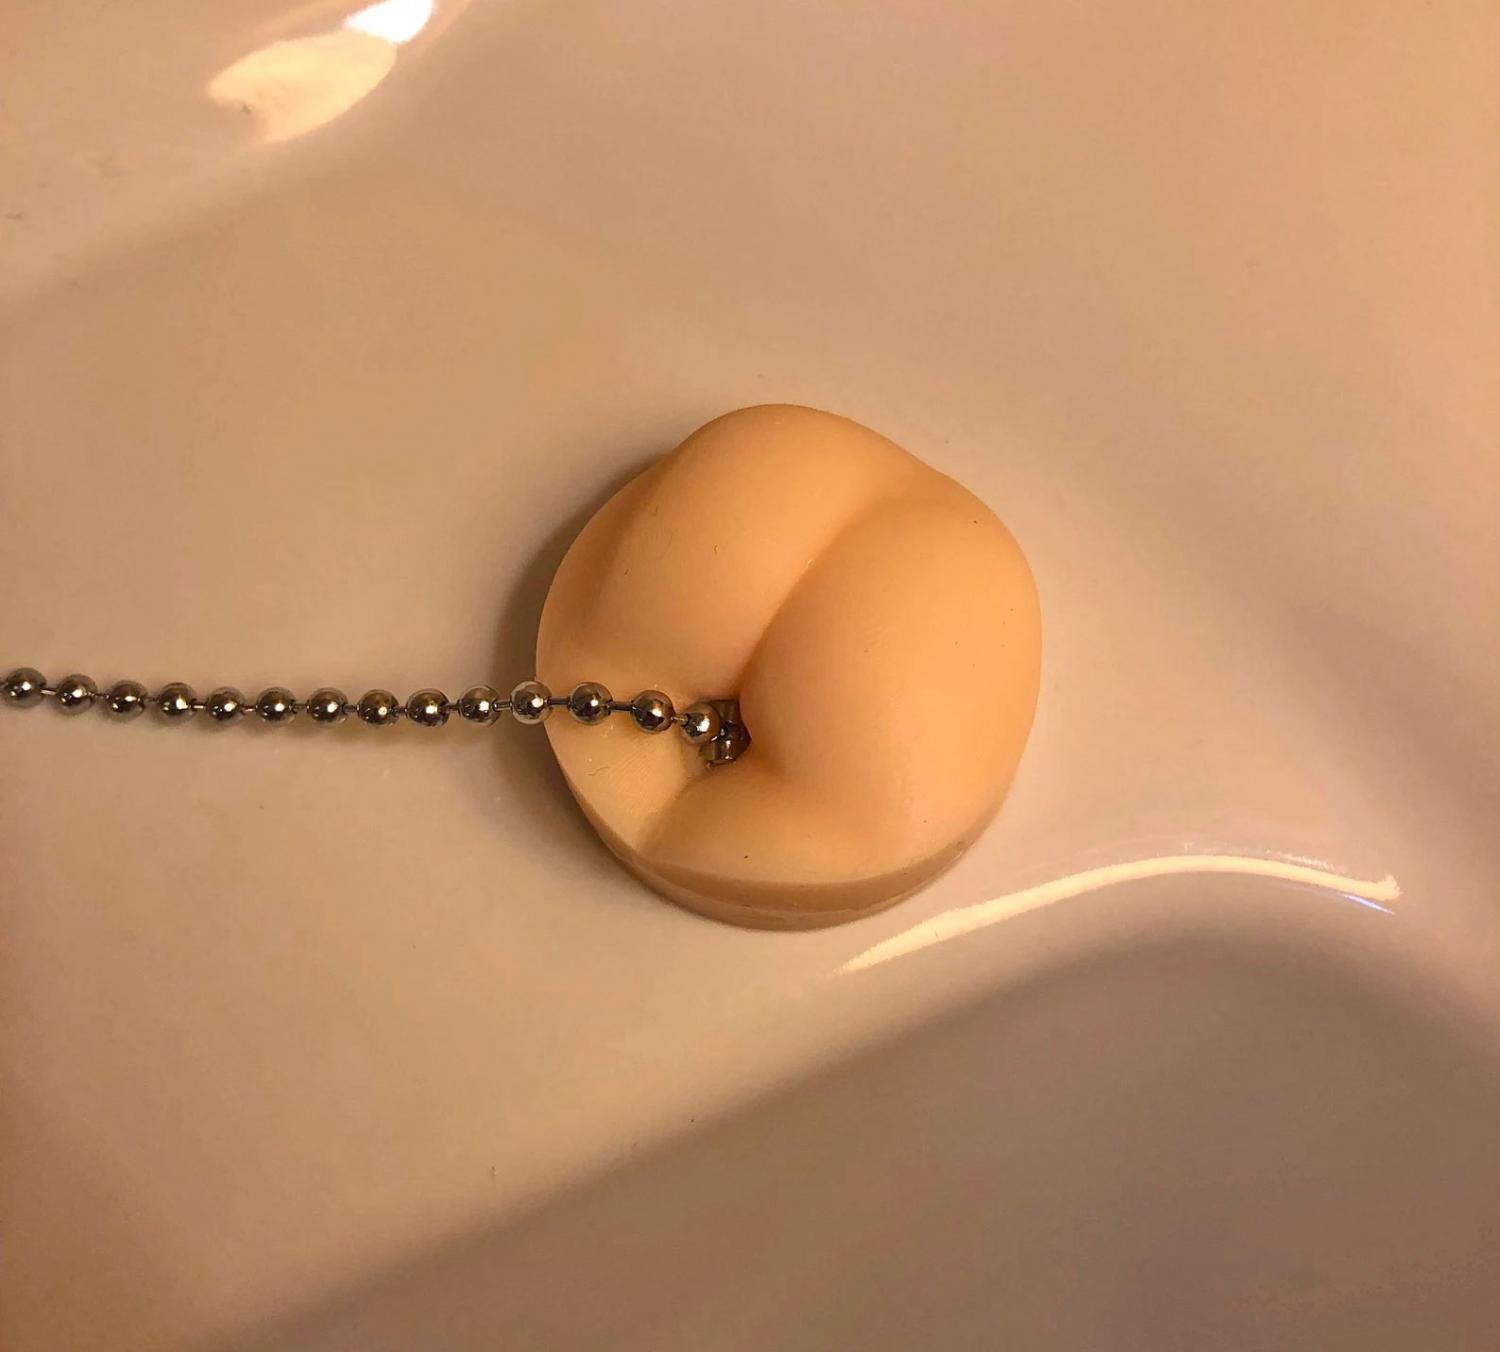 Butt shaped sink plug - butt beads bathtub stopper